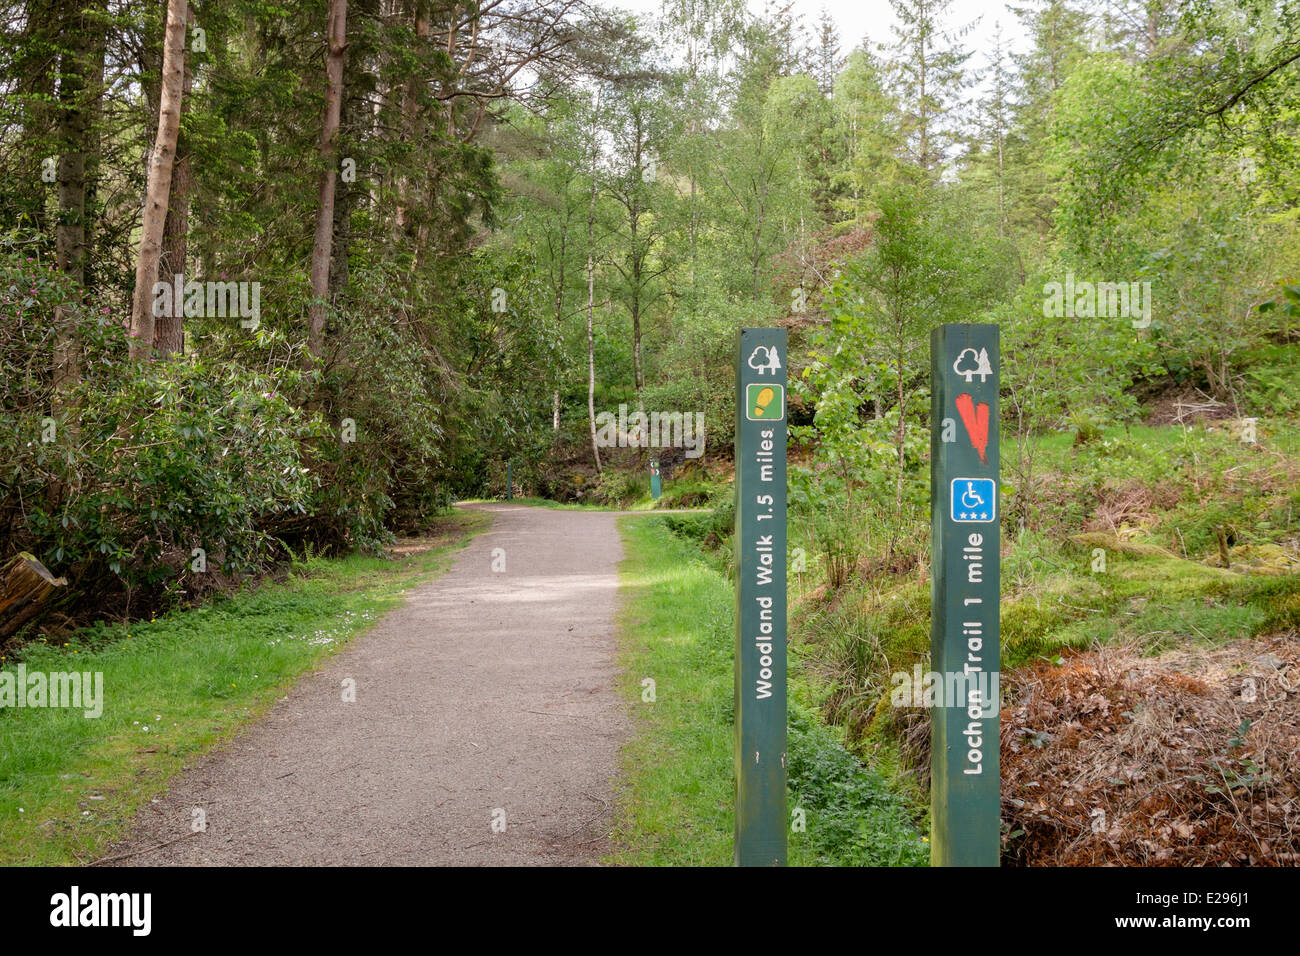 Signe de chemin Trail à Glencoe Lochan à travers bois Commission forestière adaptée aux fauteuils roulants. Glencoe, Highland, Scotland Banque D'Images